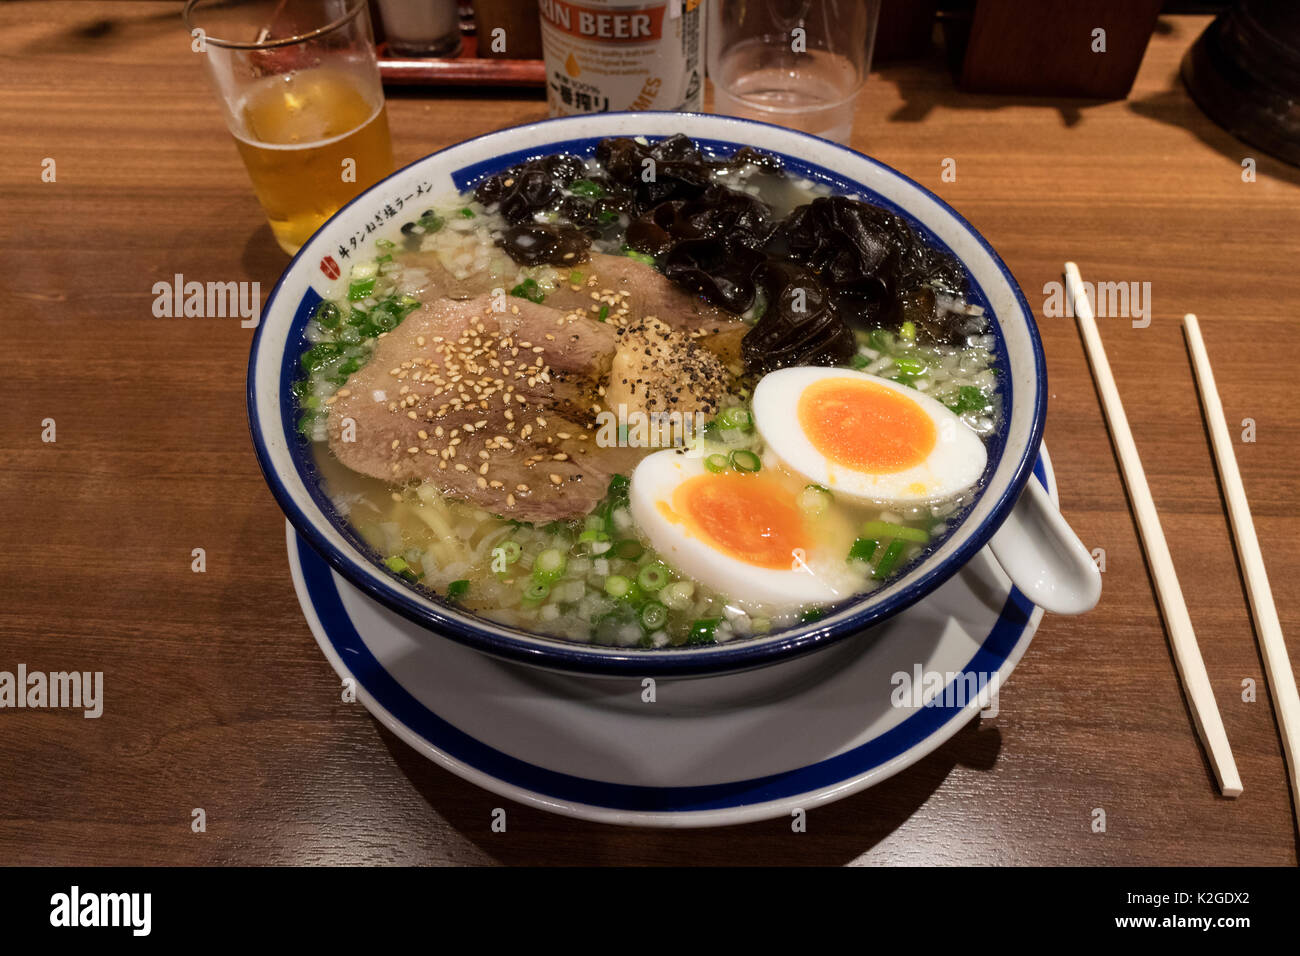 Tokyo, Japon - 13 mai 2017 : Bol à ramen japonaise traditionnelle et de la bière pour le déjeuner Banque D'Images